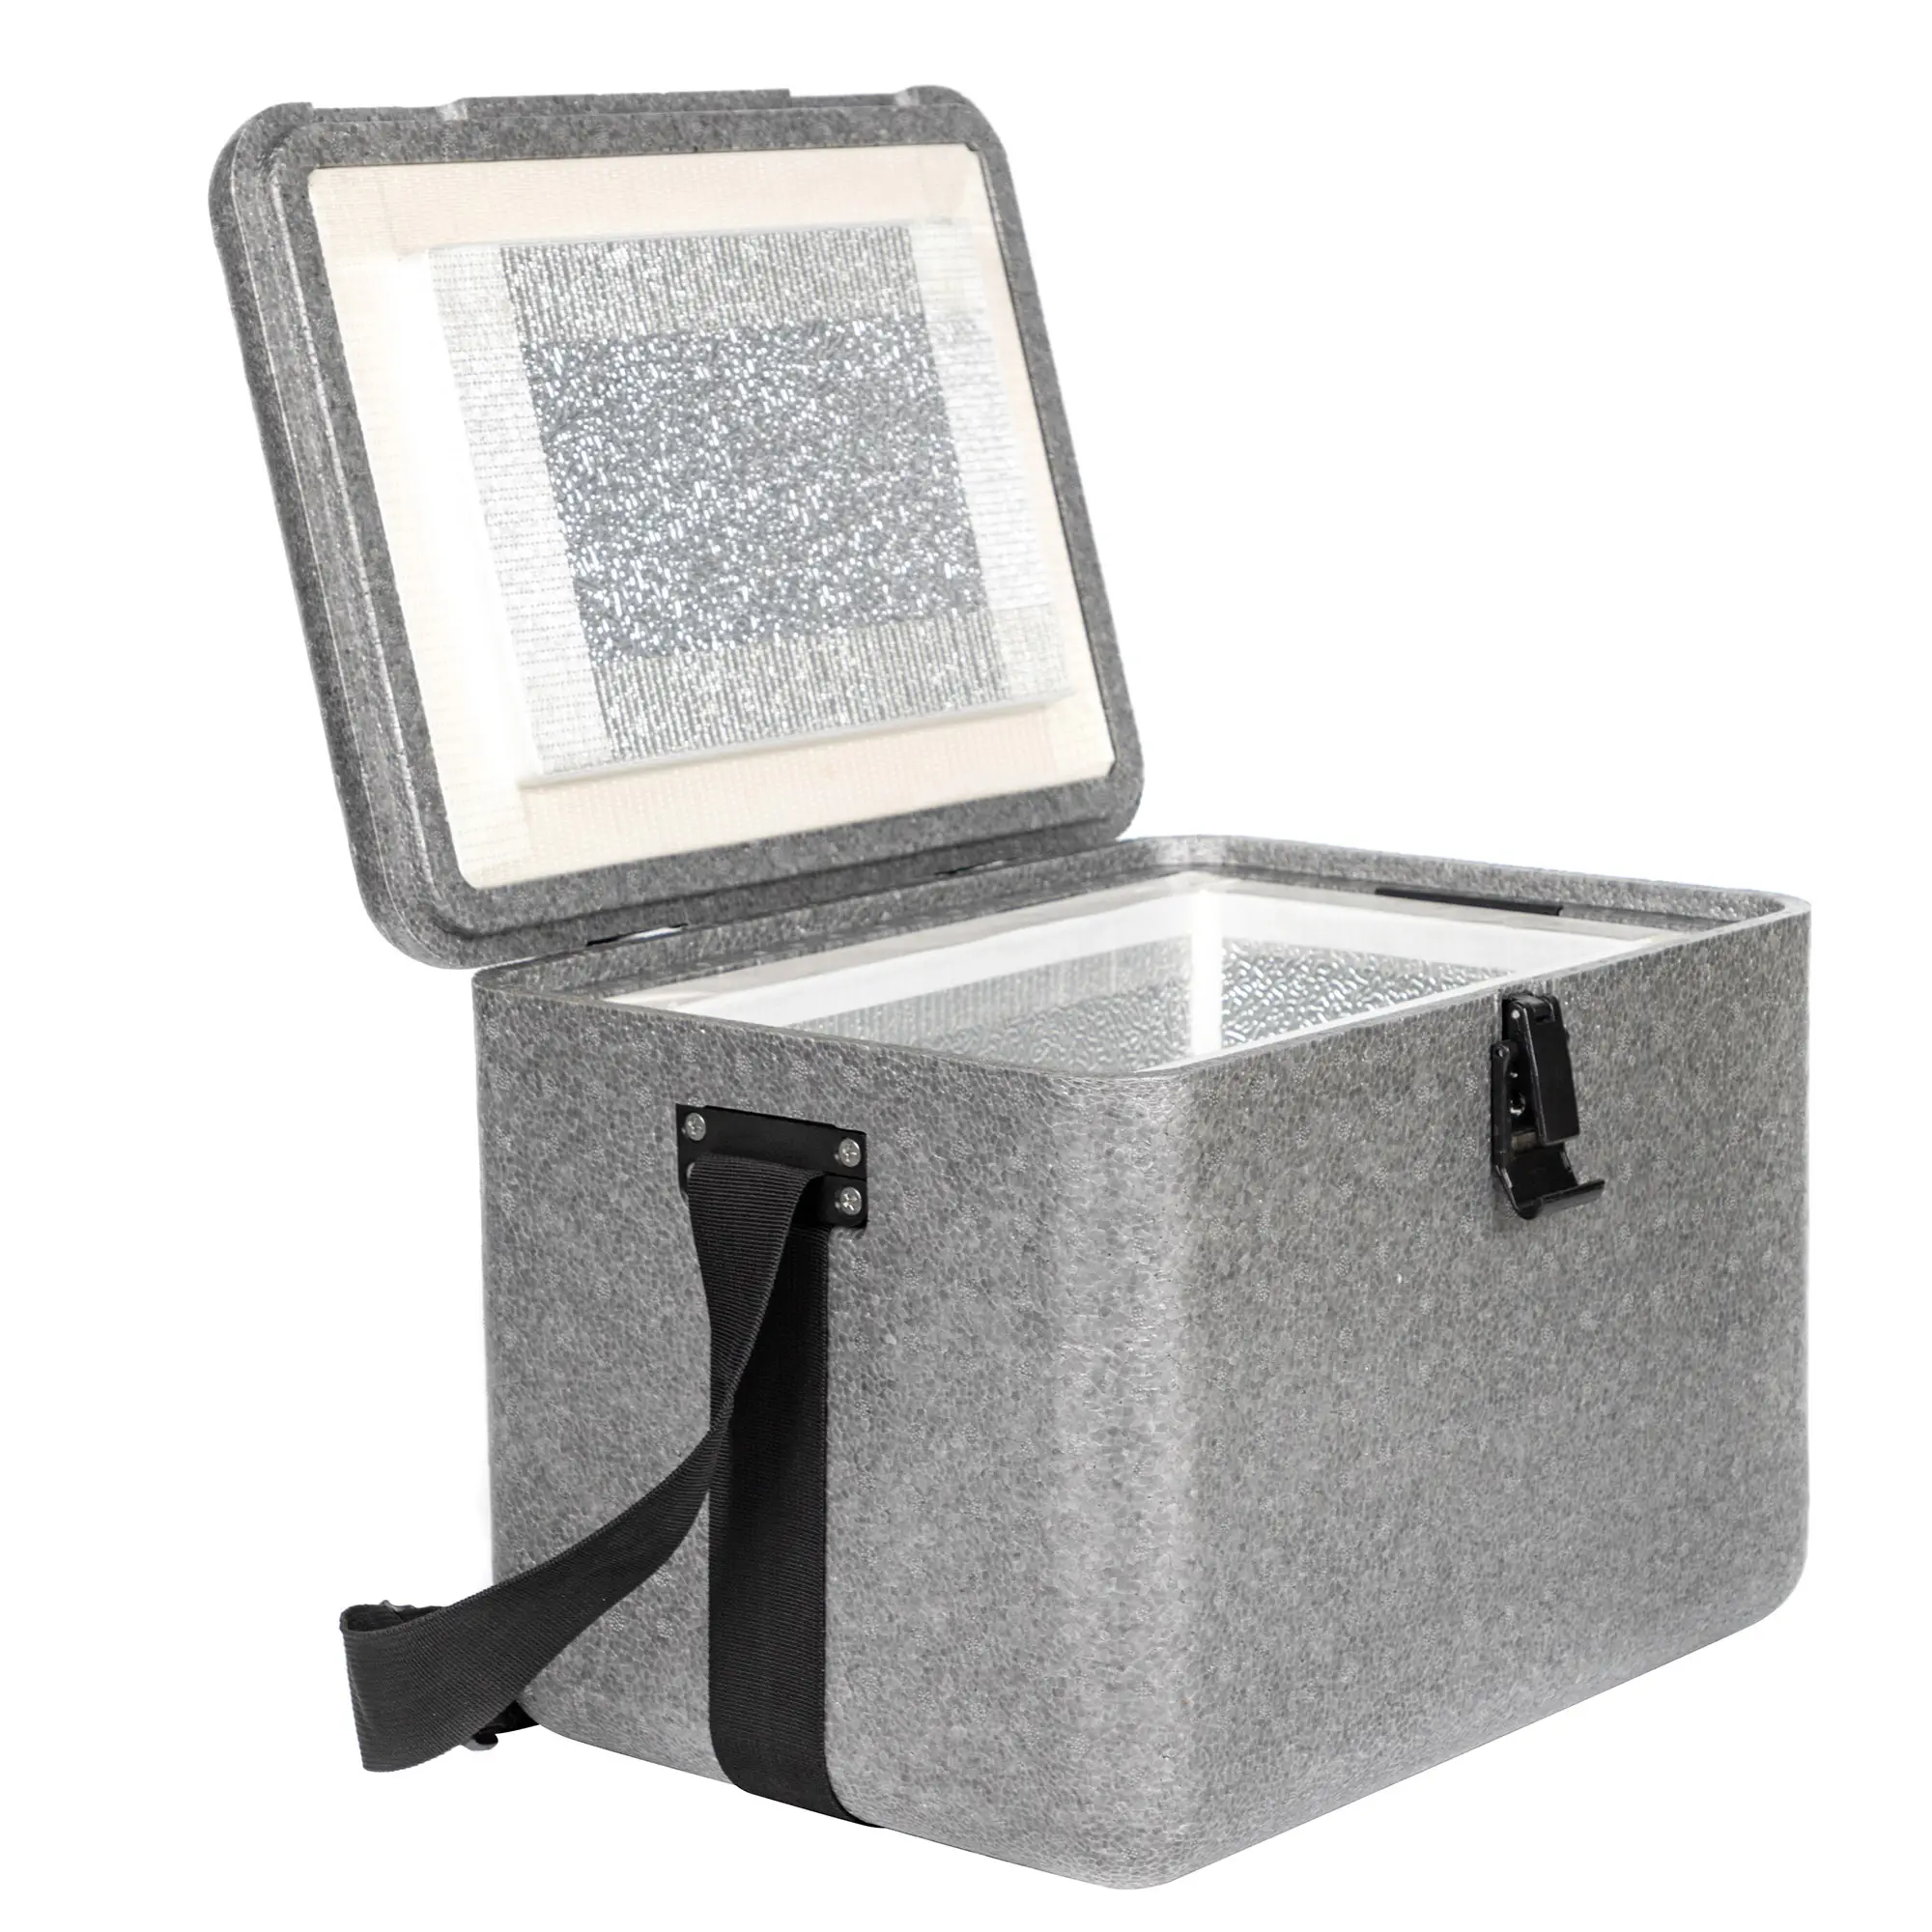 Custom Outdoor Carry Insulin Pen Cooler Travel Cooler Box Insulated Cooler Box For Camping